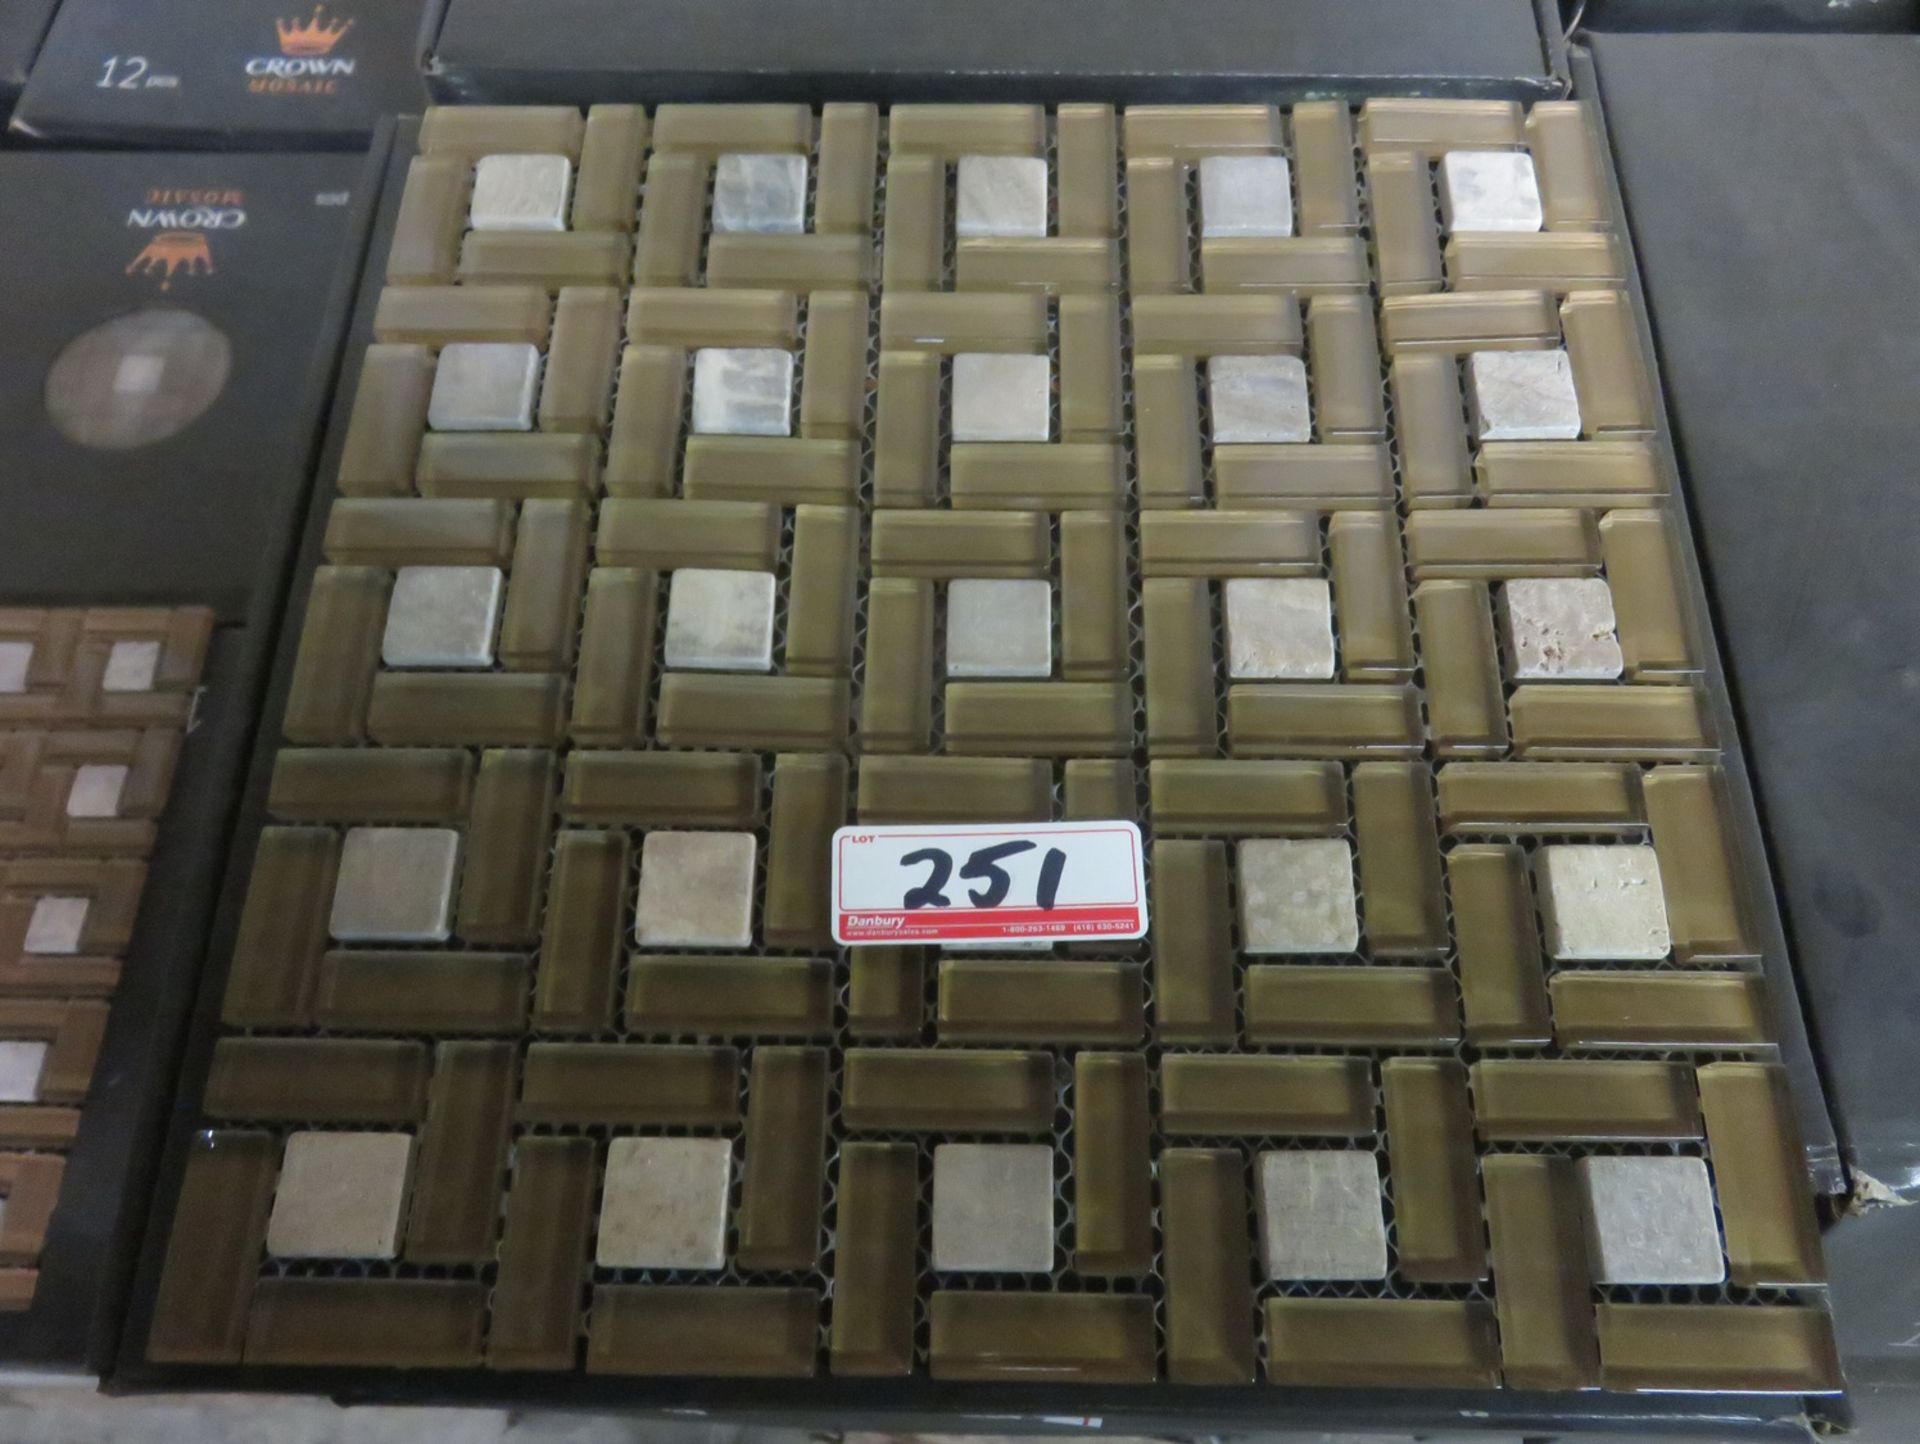 BOXES - CROWN HG-815204 300 X 300 X 8MM MOSAIC TILES (12 PCS/BOX)